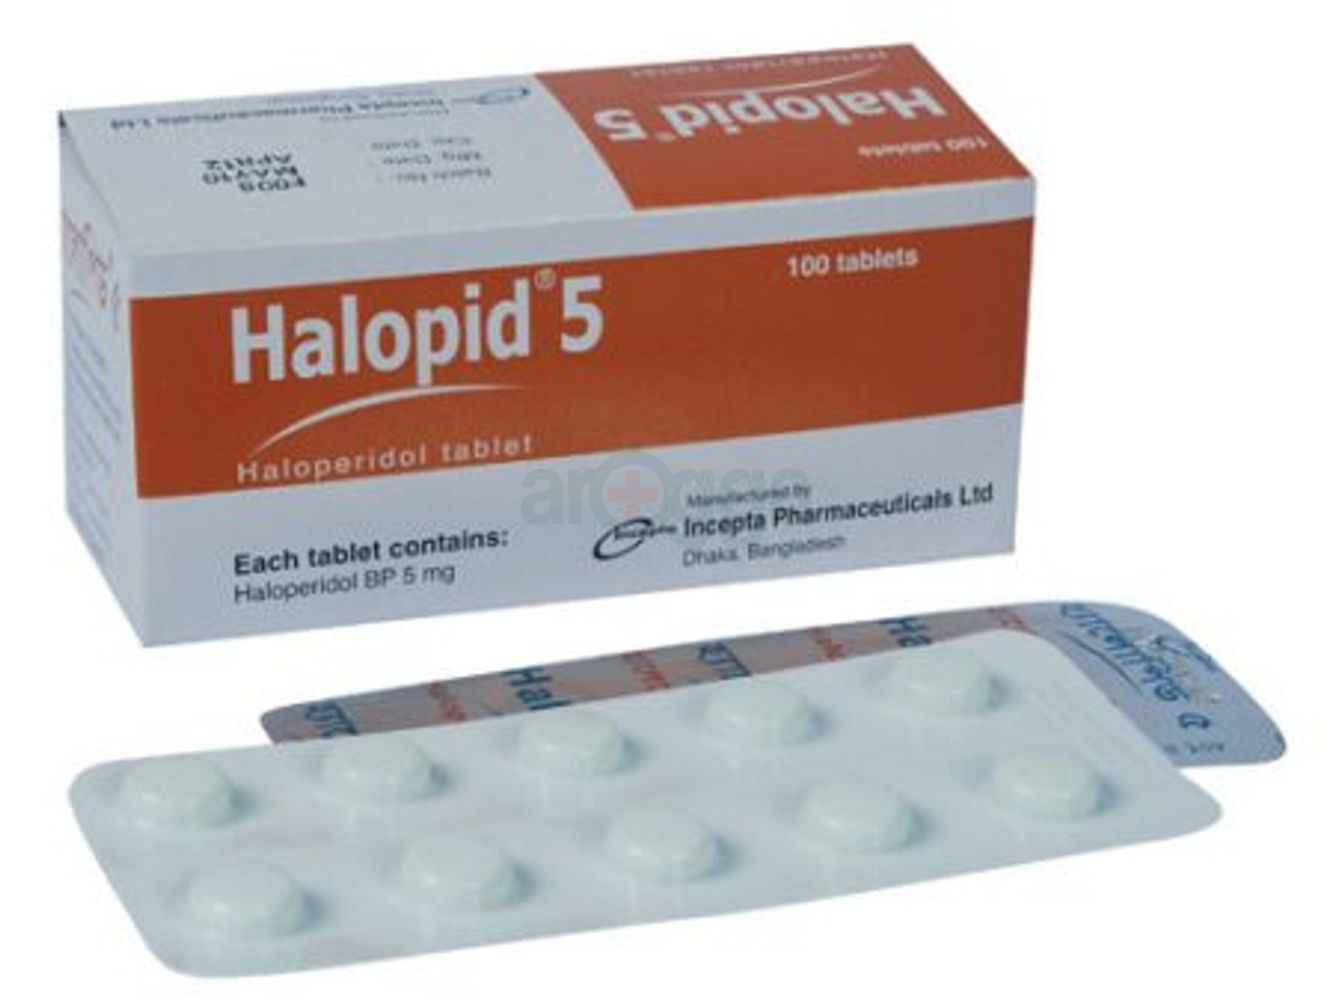 Halopid